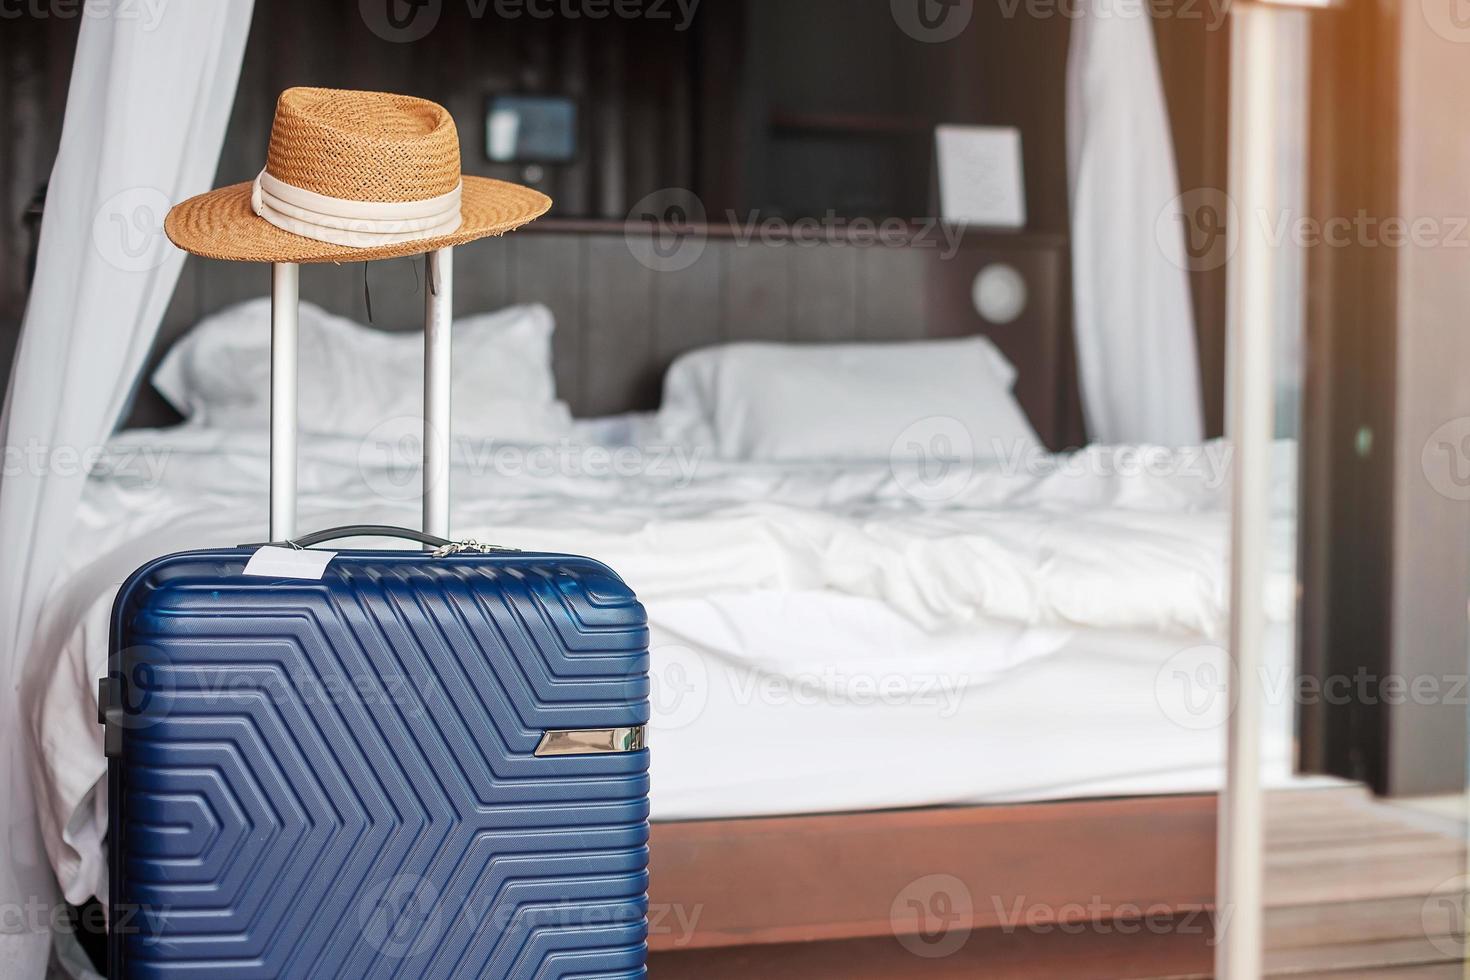 bagages bleus avec chapeau dans une chambre d'hôtel moderne après l'ouverture de la porte. temps de voyager, service, voyage, voyage, vacances d'été et concepts de vacances photo